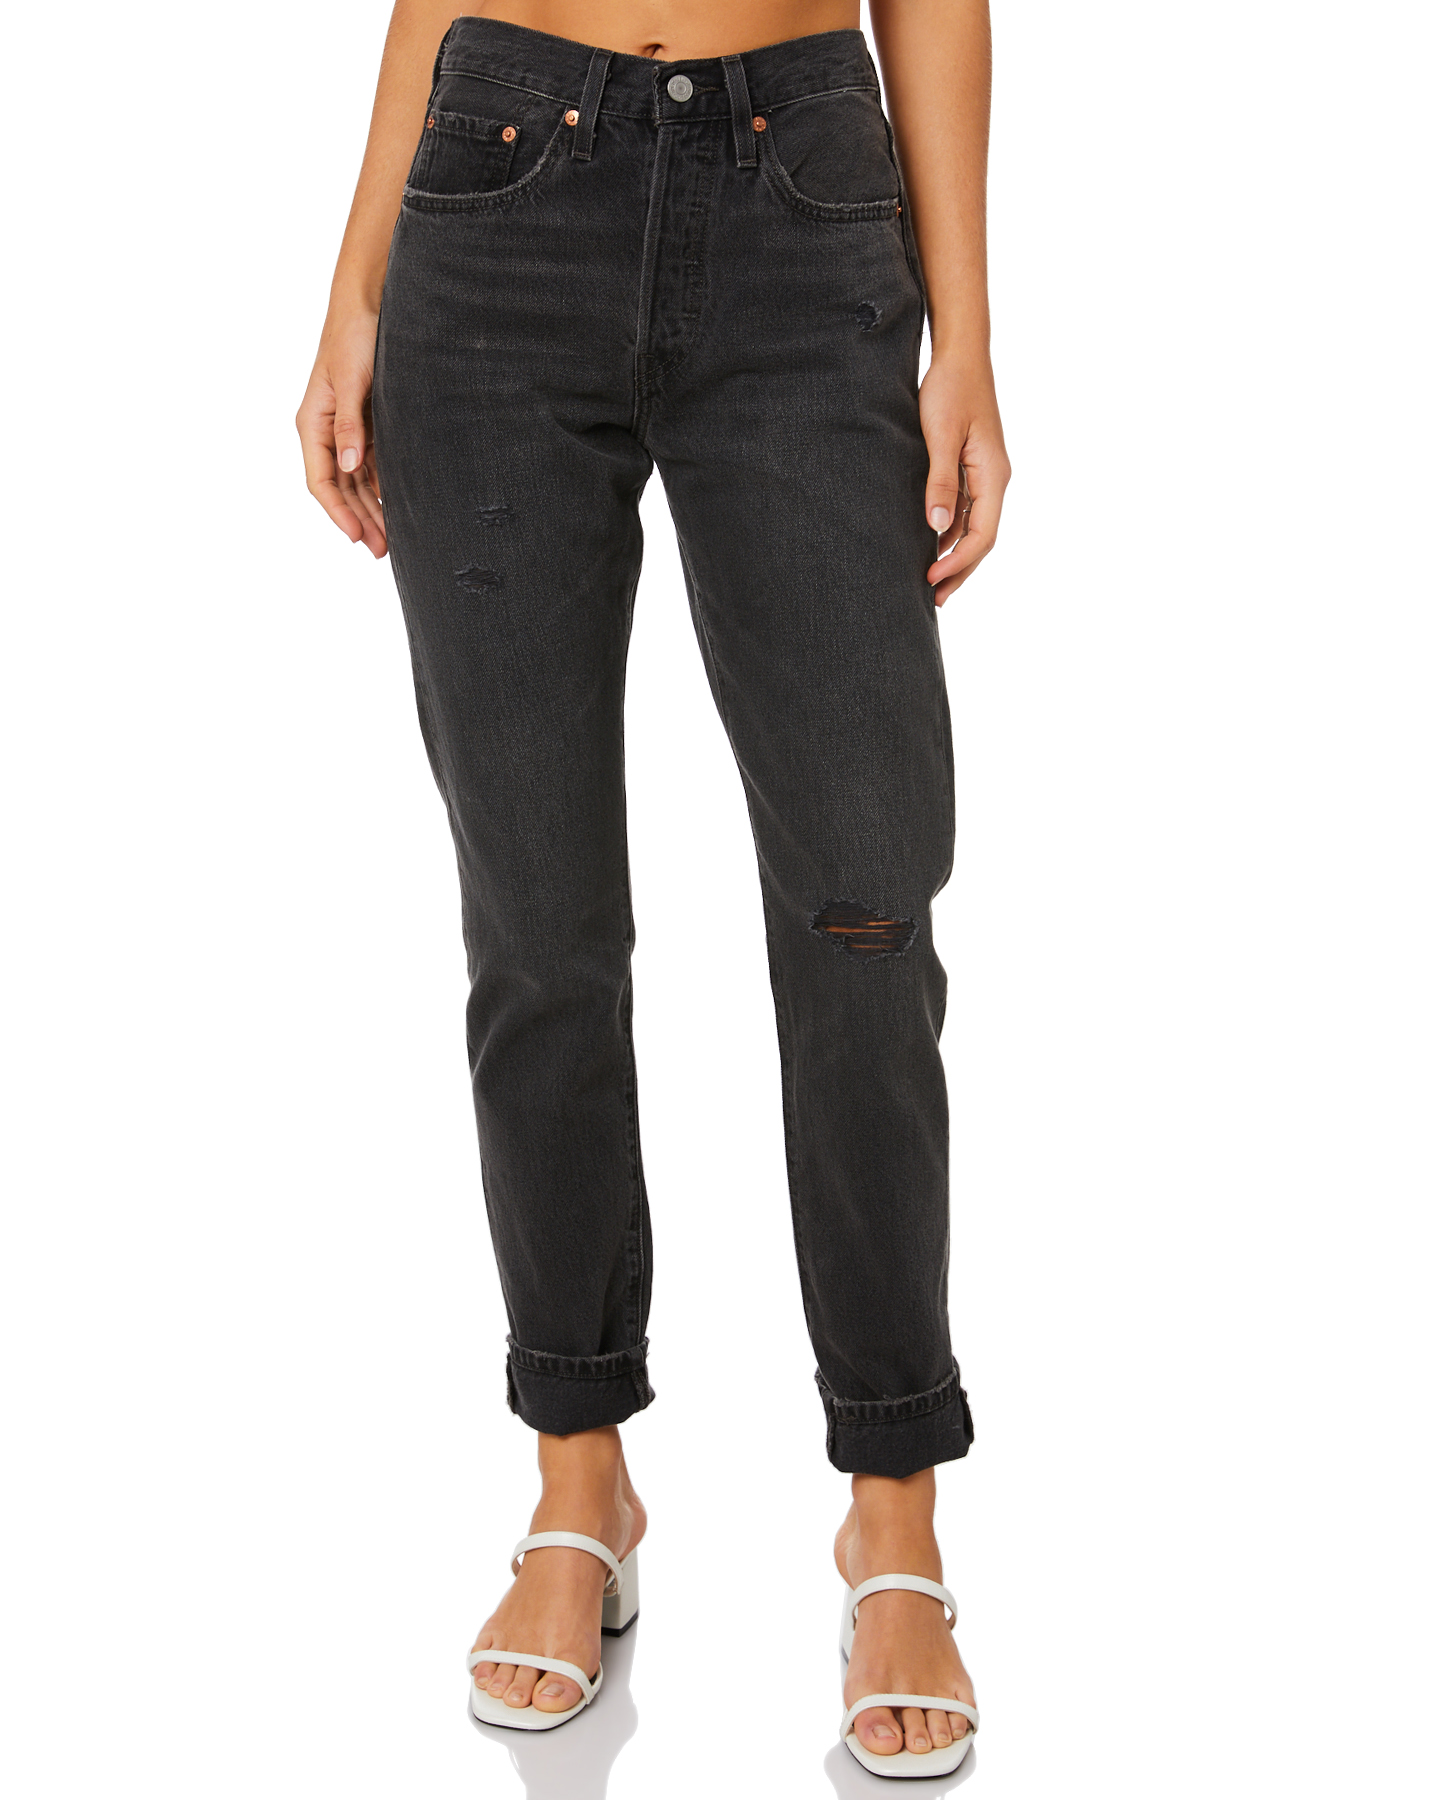 levis black jeans for women